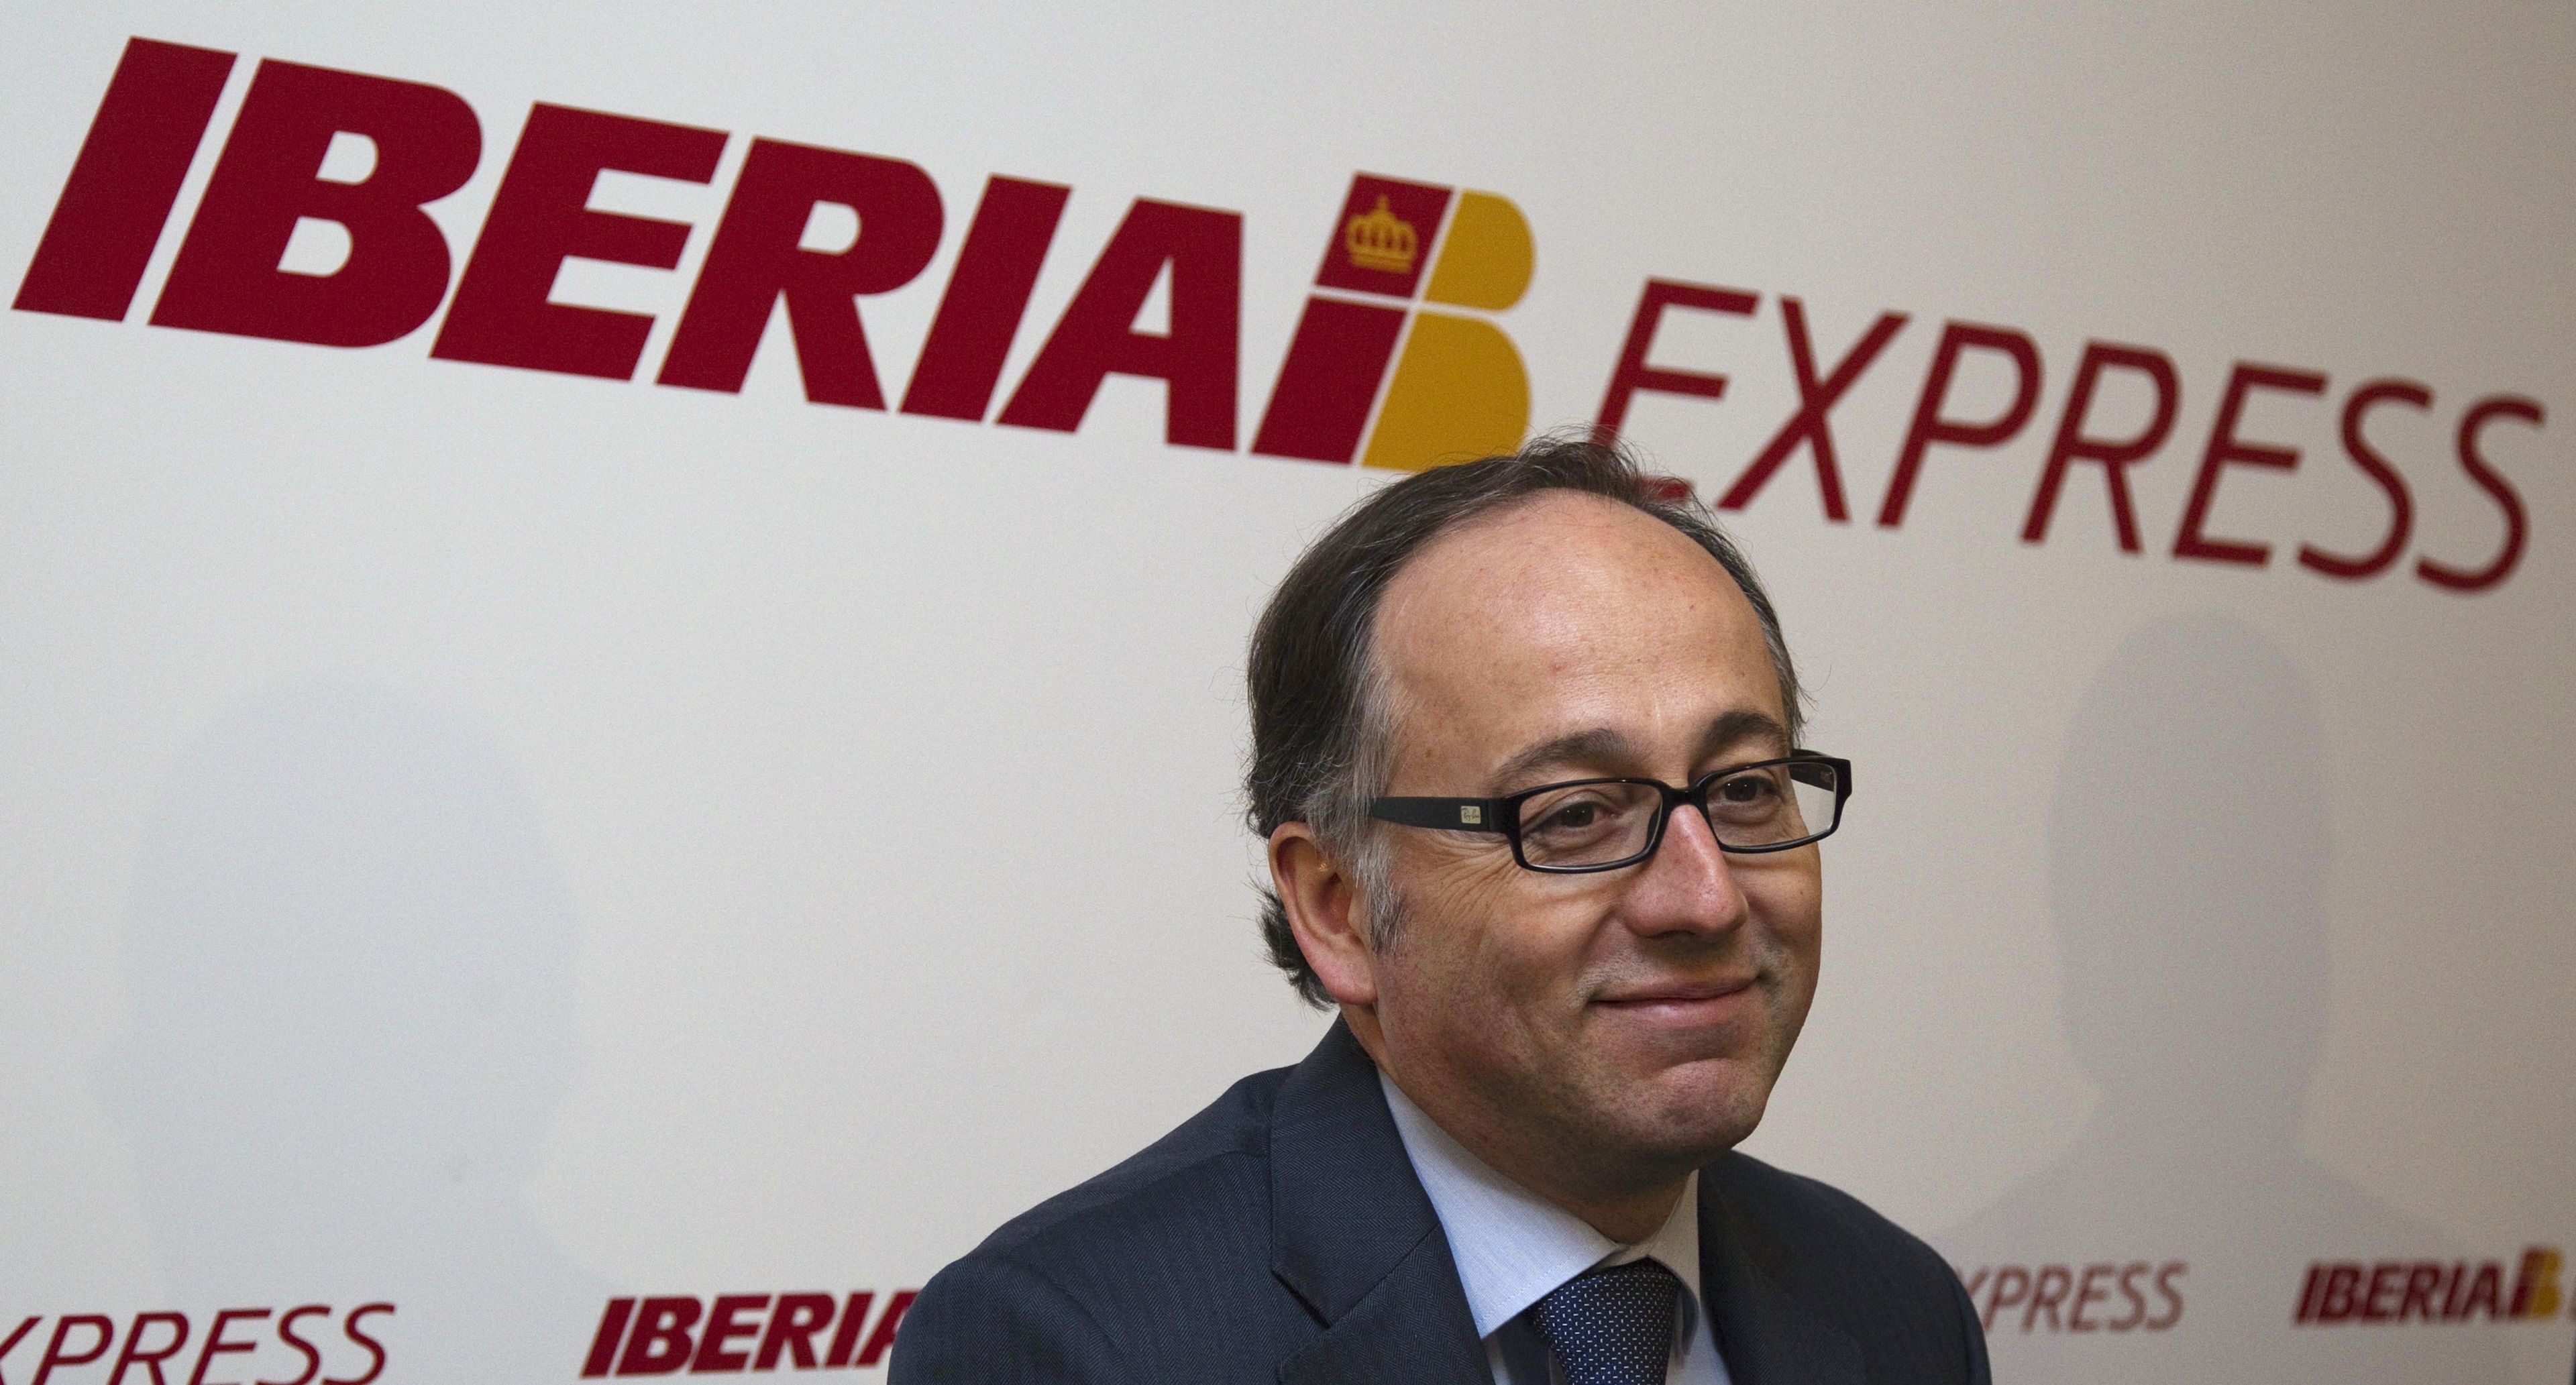 El presidente de Iberia, Luis Gallego, en una rueda de prensa en 2012.